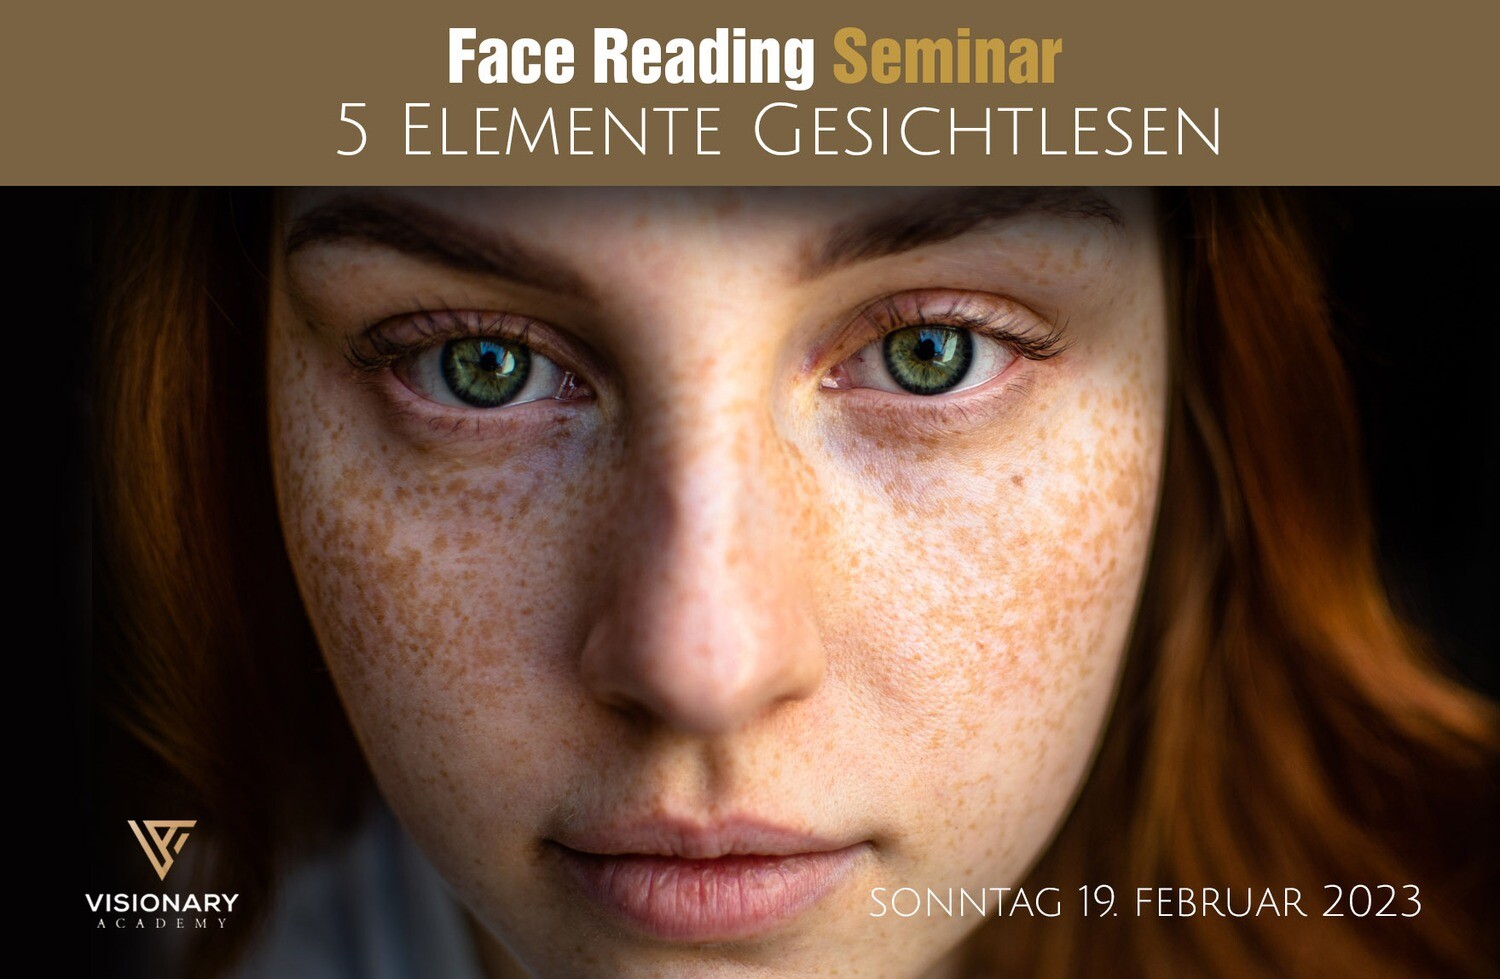 19.02. -  5 Elemente Gesichtlesen/ Face Reading Seminar